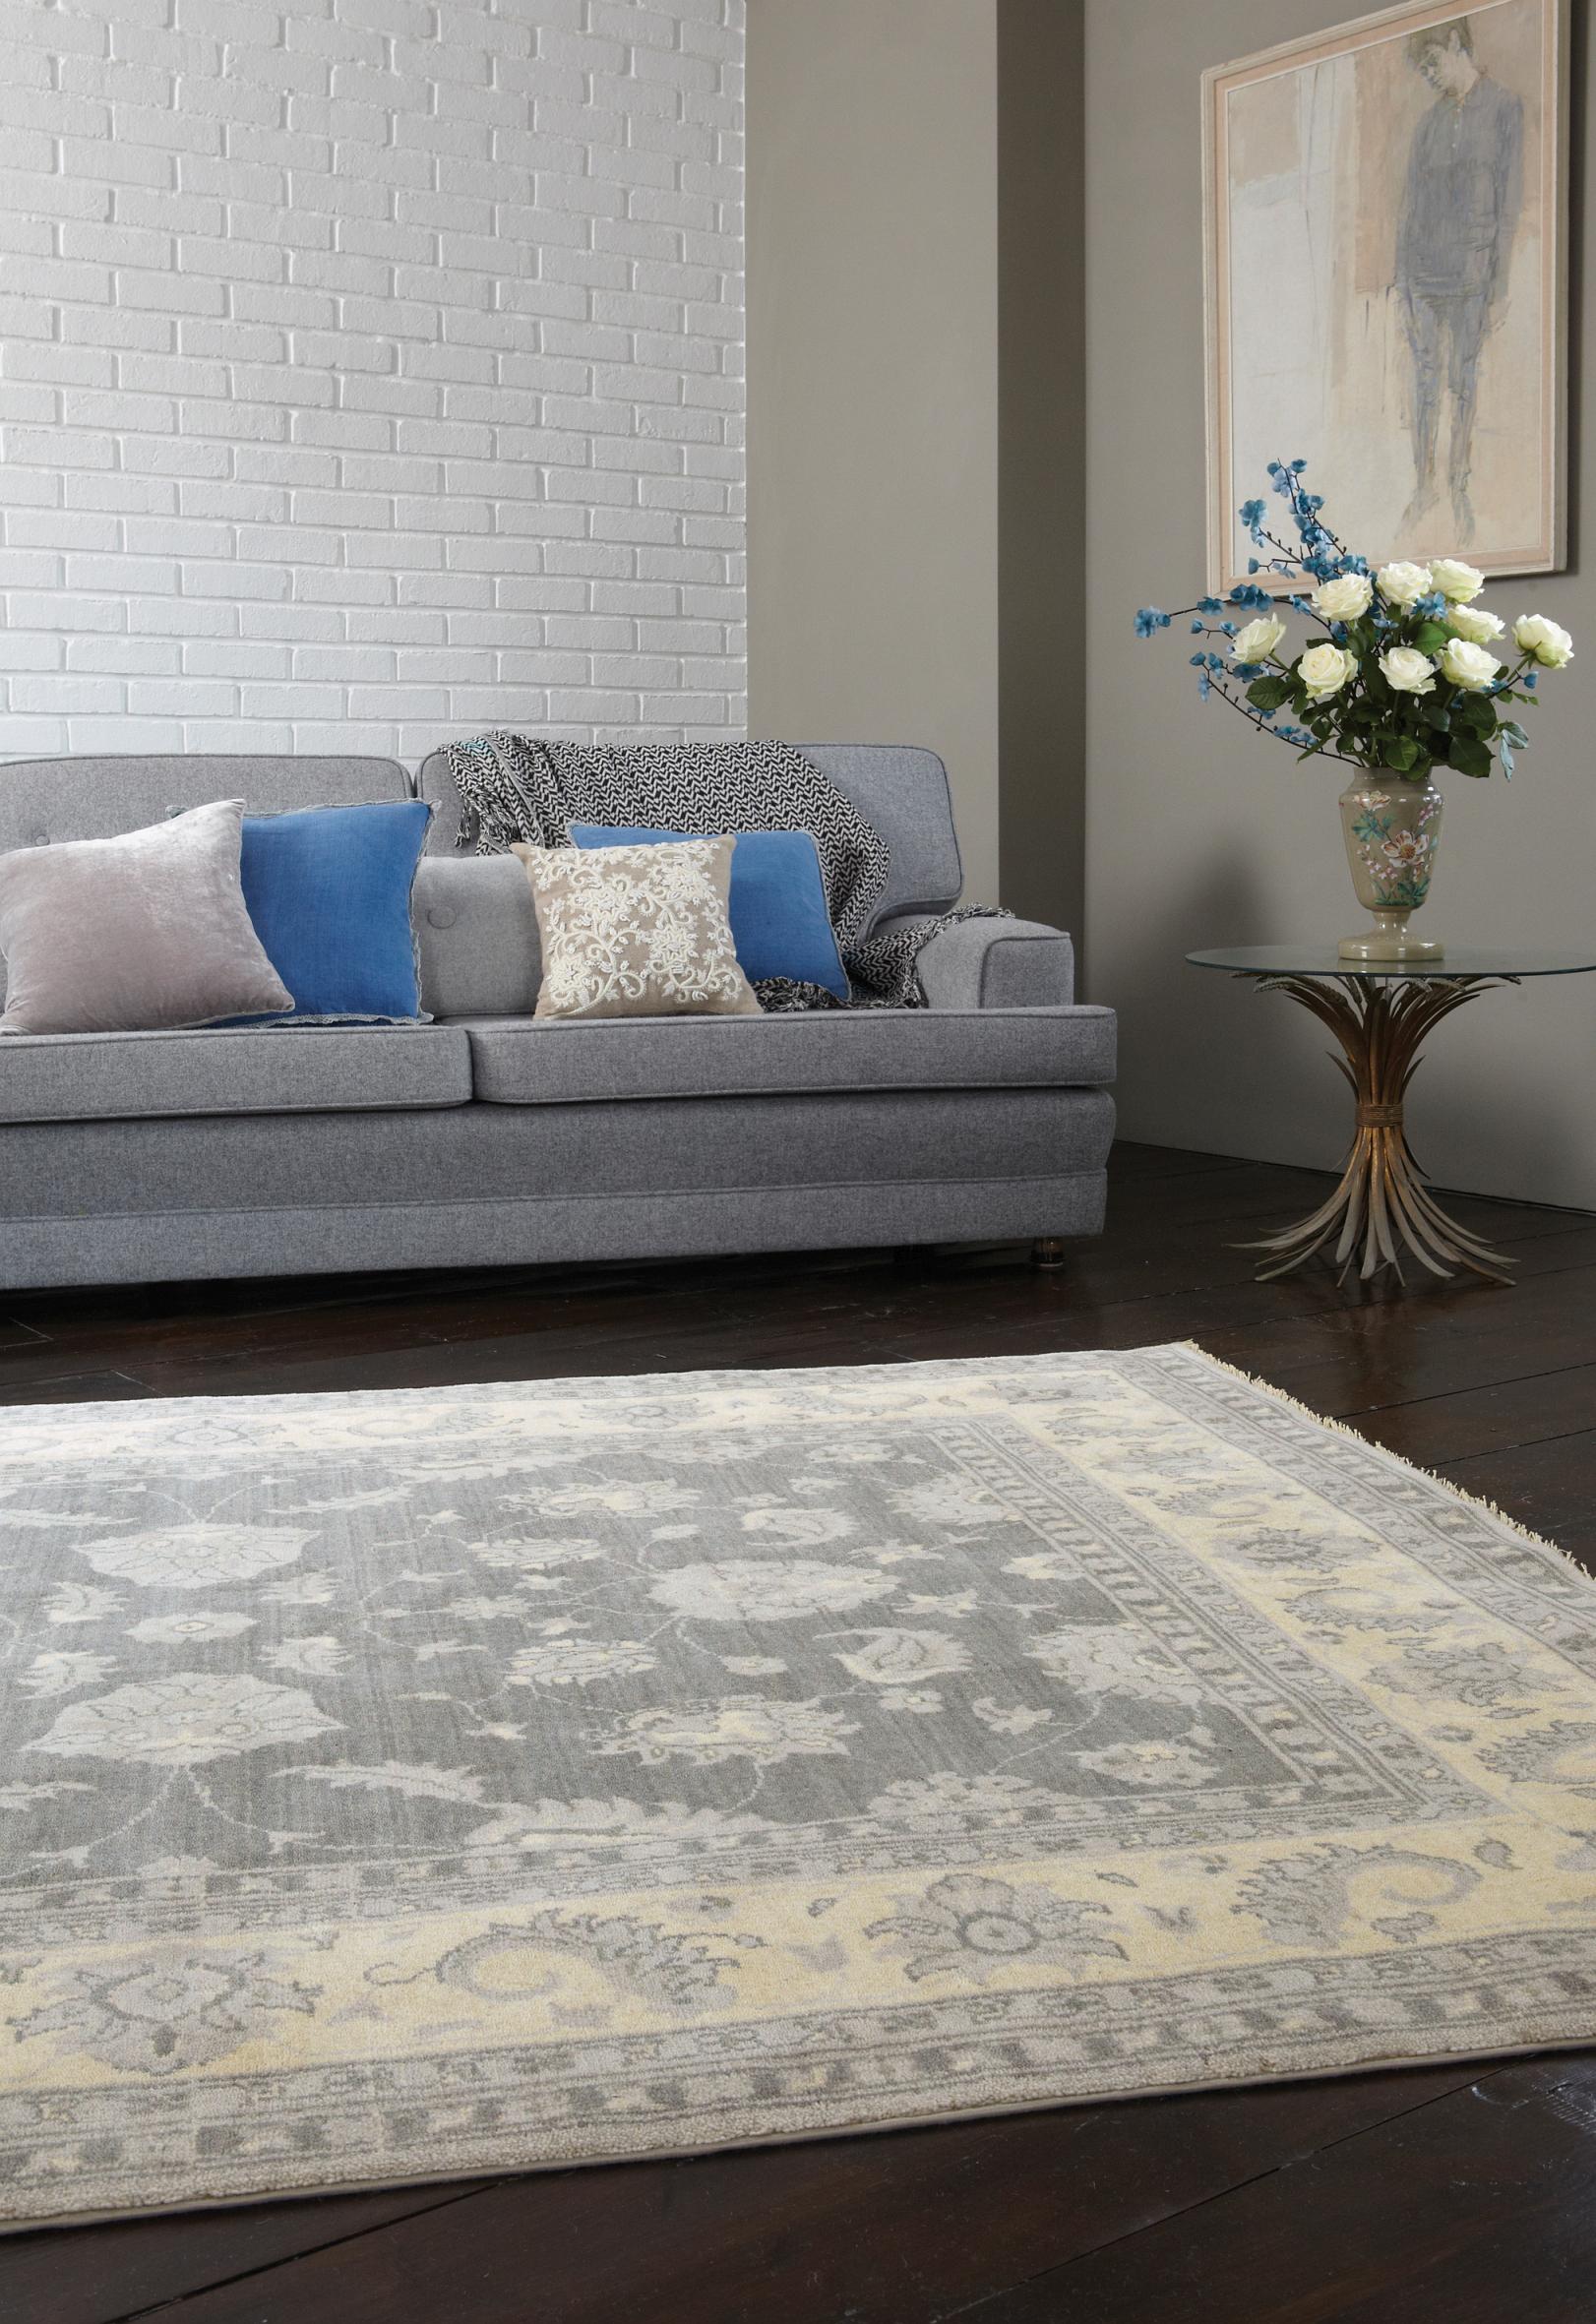 Klassischer Teppich im modernen Wohnzimmer #wohnzimmerteppich ©KadimaDesign